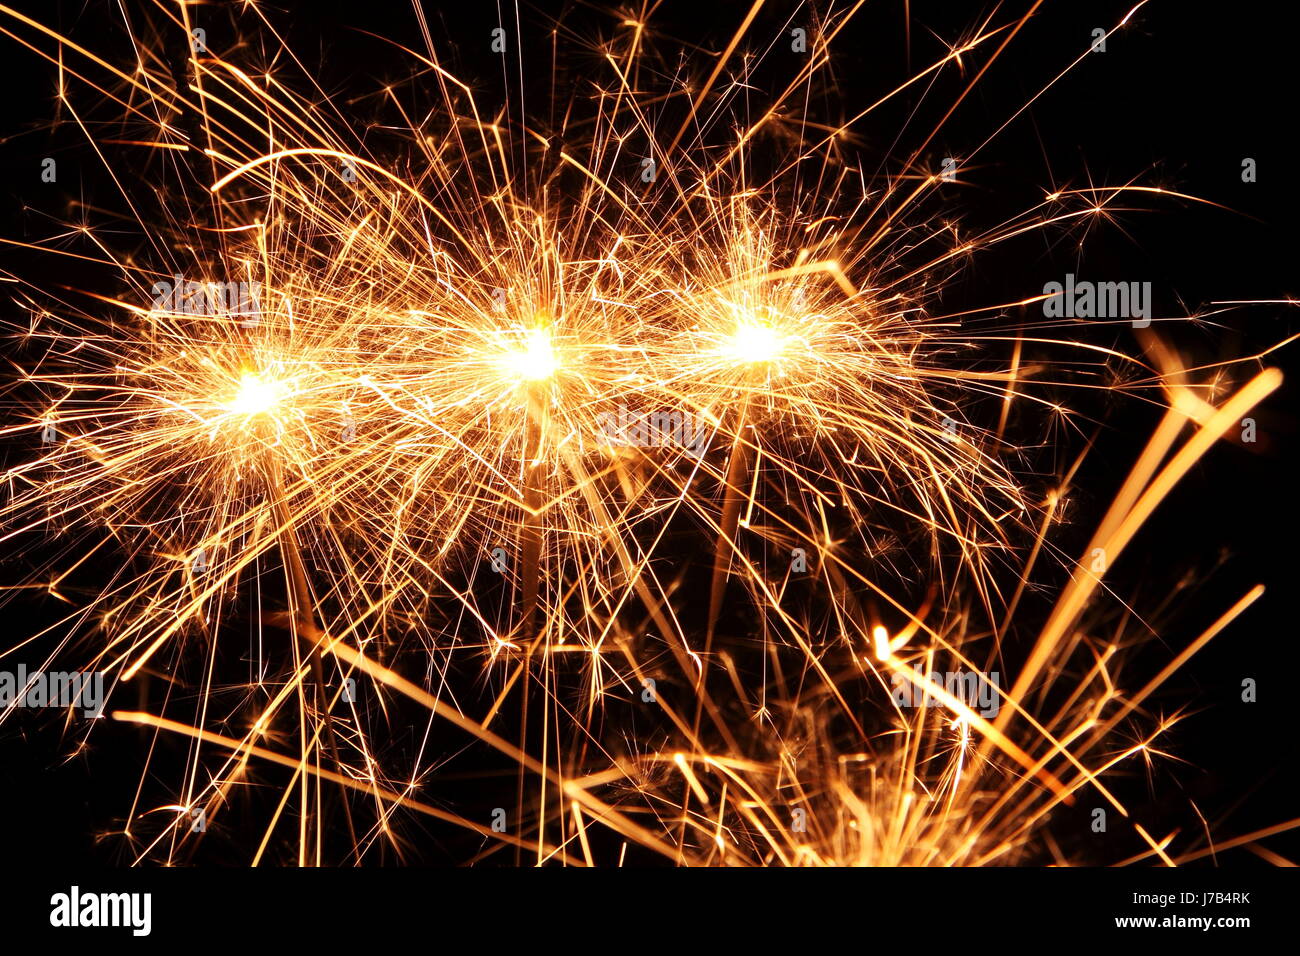 Party feiern Neujahr s Tag Silvester Feuerwerk Feuerwerk Geburtstag Urlaub  Stockfotografie - Alamy